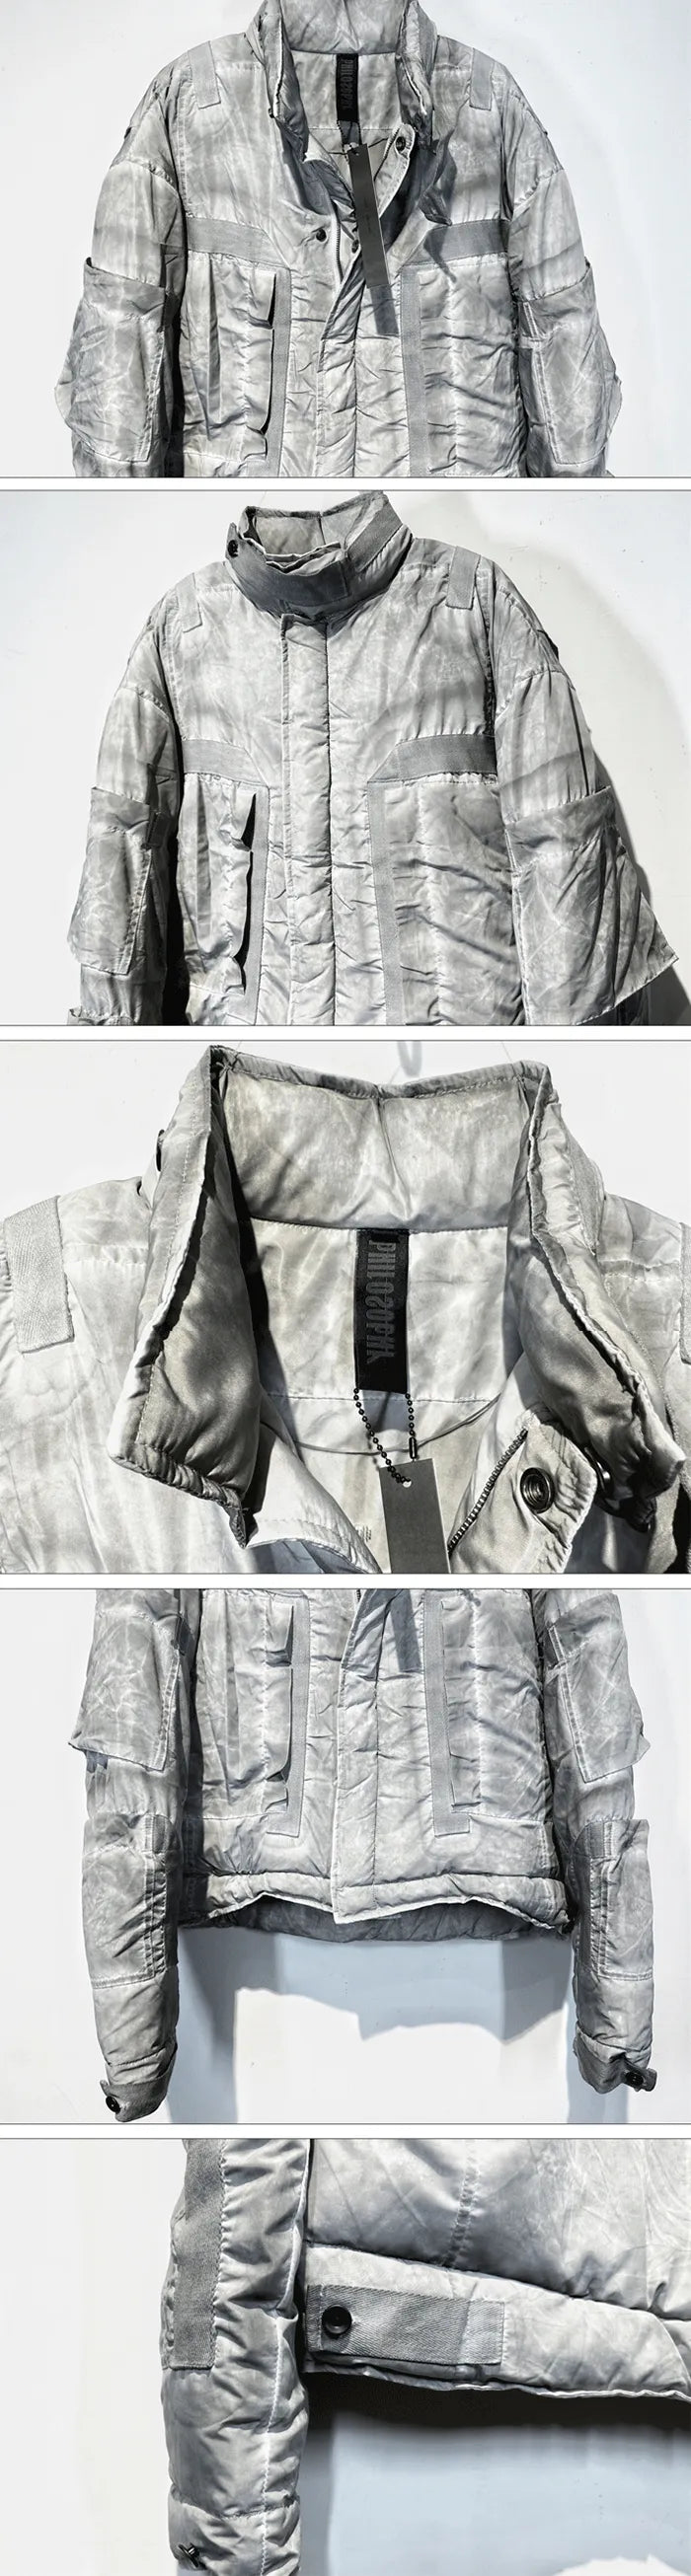 details of the Wasteland Jacket "Nagoya"